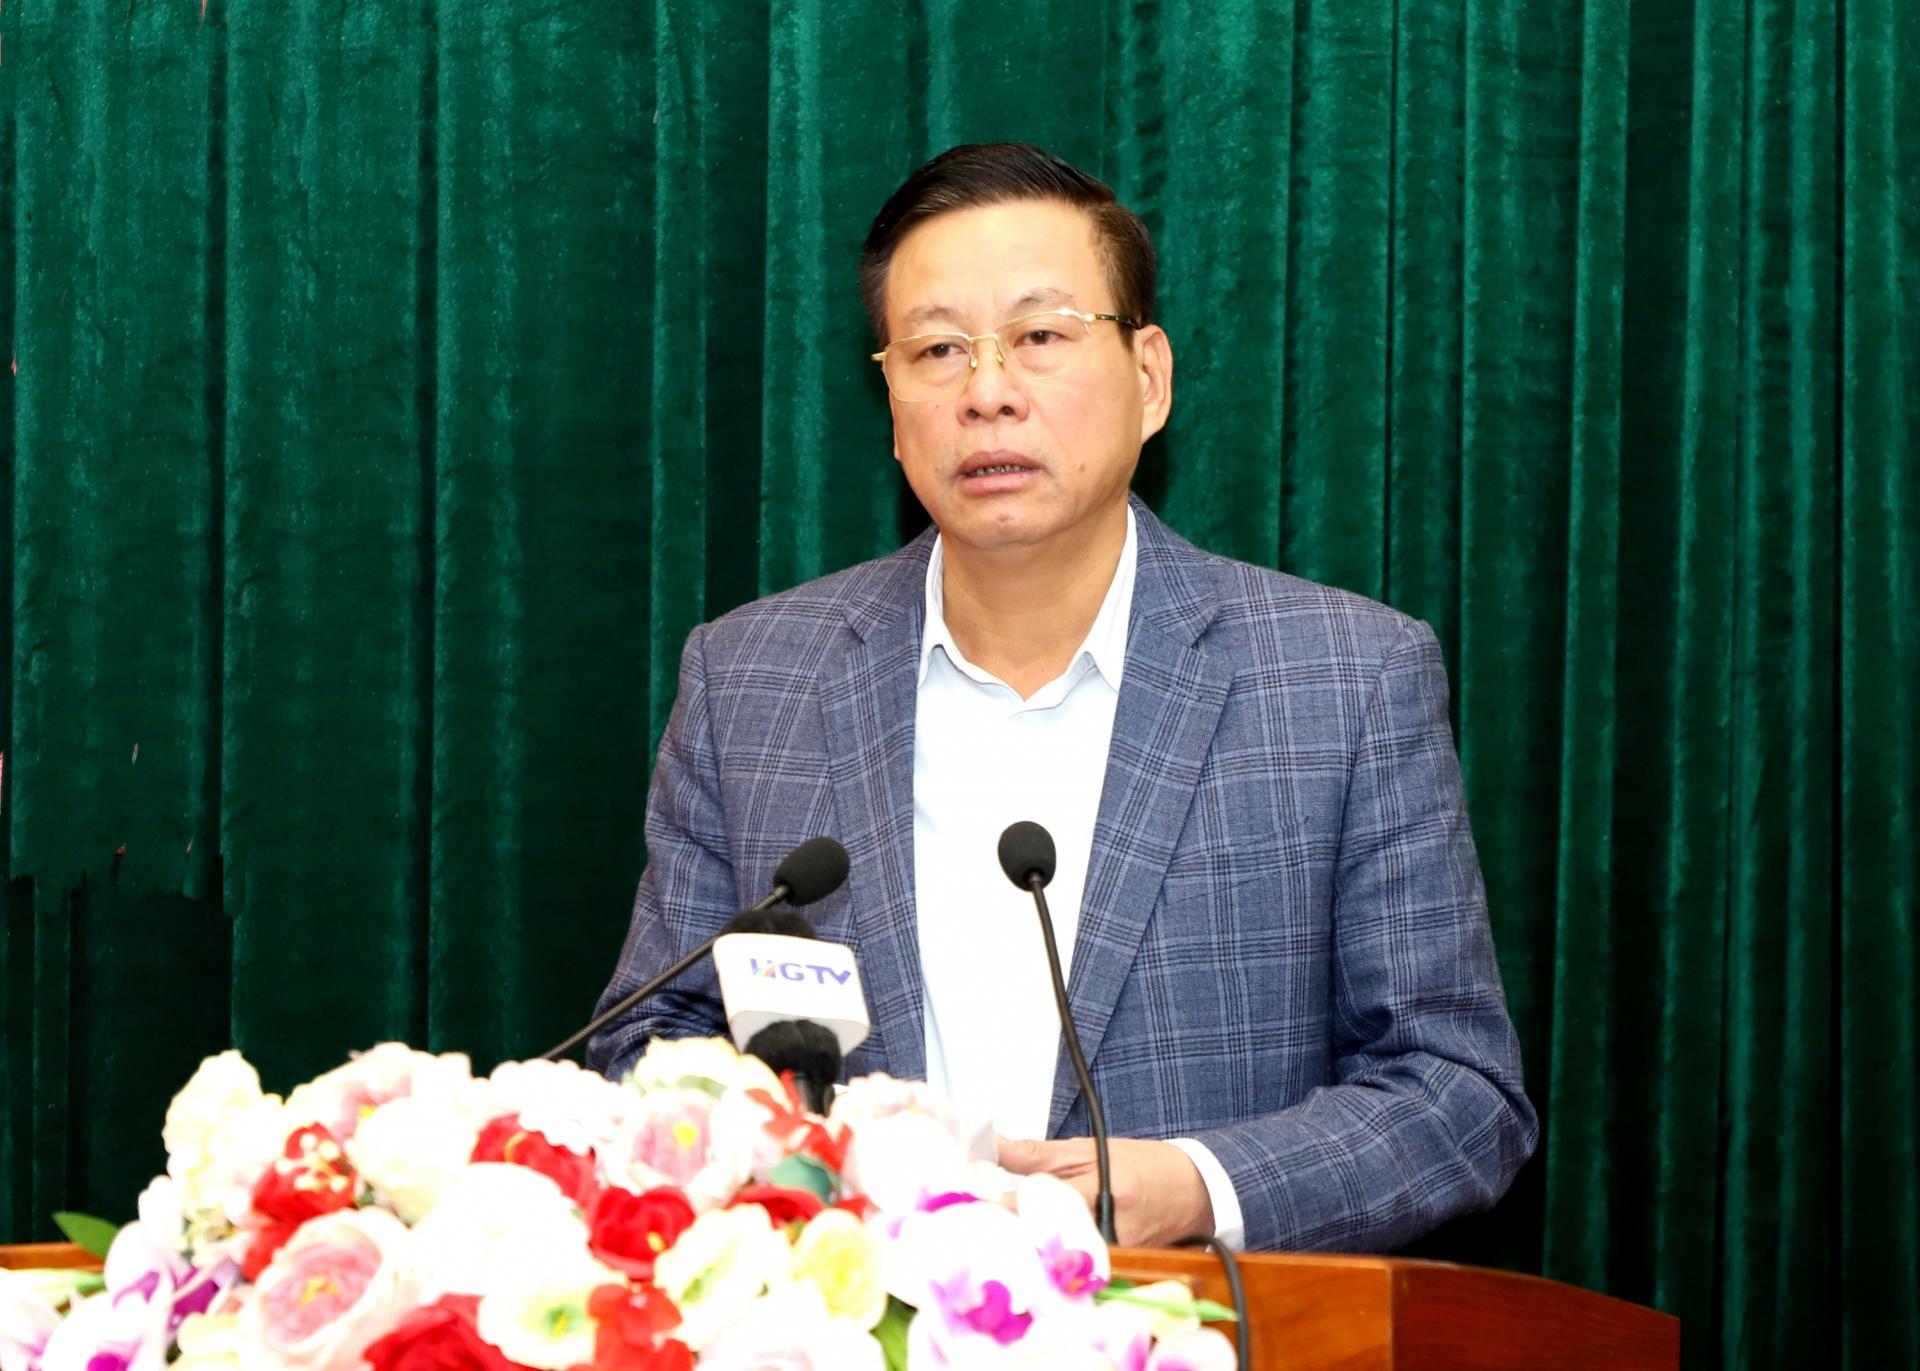 Phó Bí thư Tỉnh ủy, Chủ tịch UBND tỉnh Nguyễn Văn Sơn thông tin về chuyến thăm cấp nhà nước tới Việt Nam của Tổng Bí thư, Chủ tịch nước Trung Quốc Tập Cận Bình.